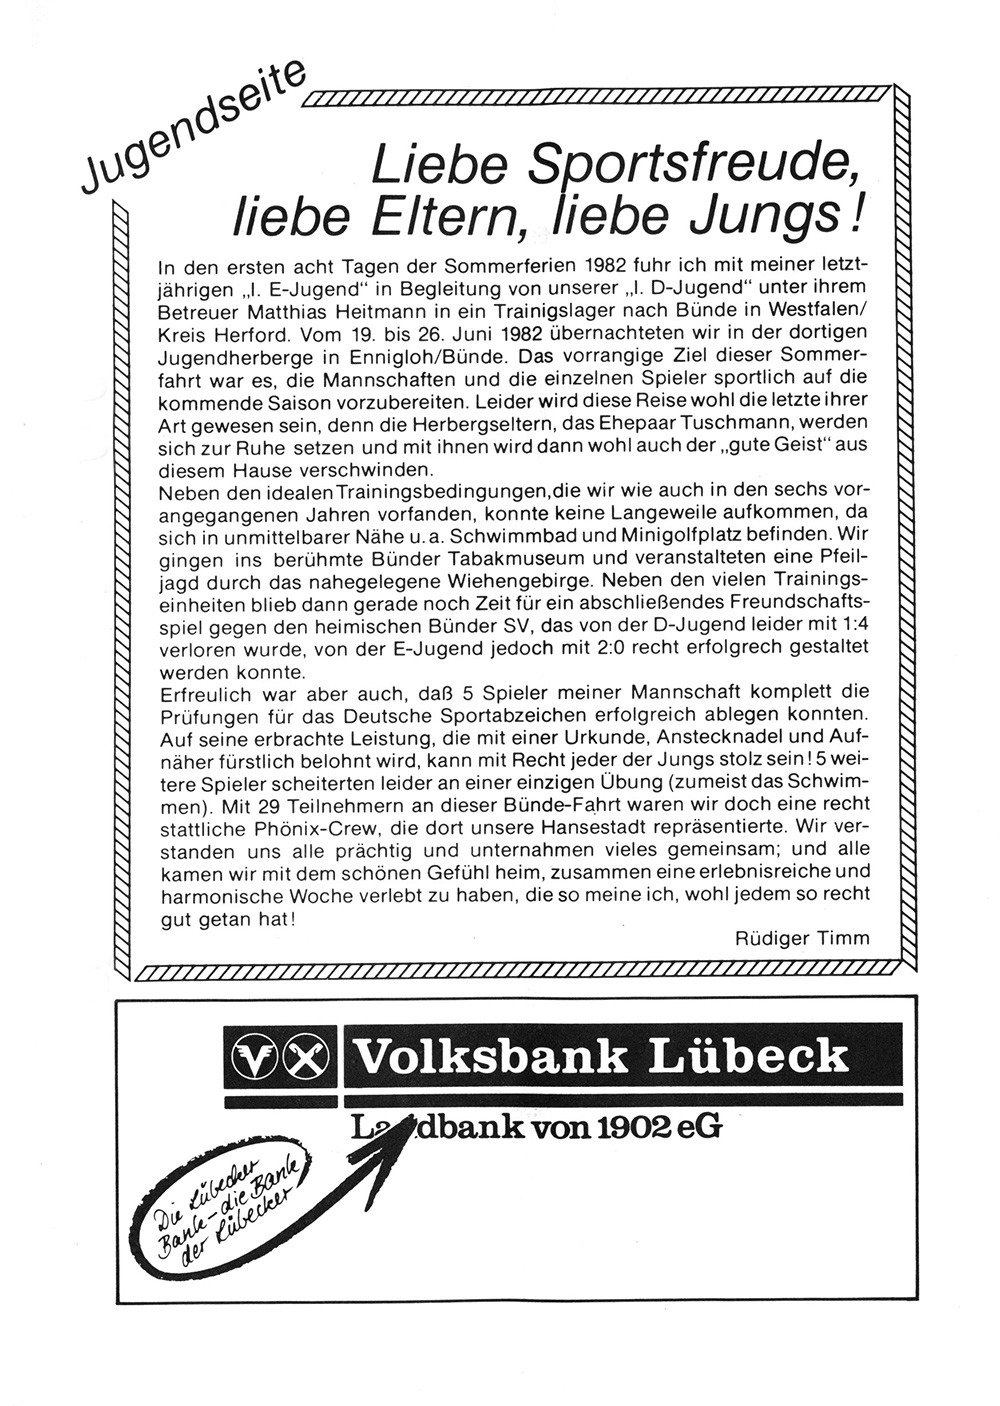 Der PHÖNIX EXPRESS, Heft 38, v. 14.8.1982